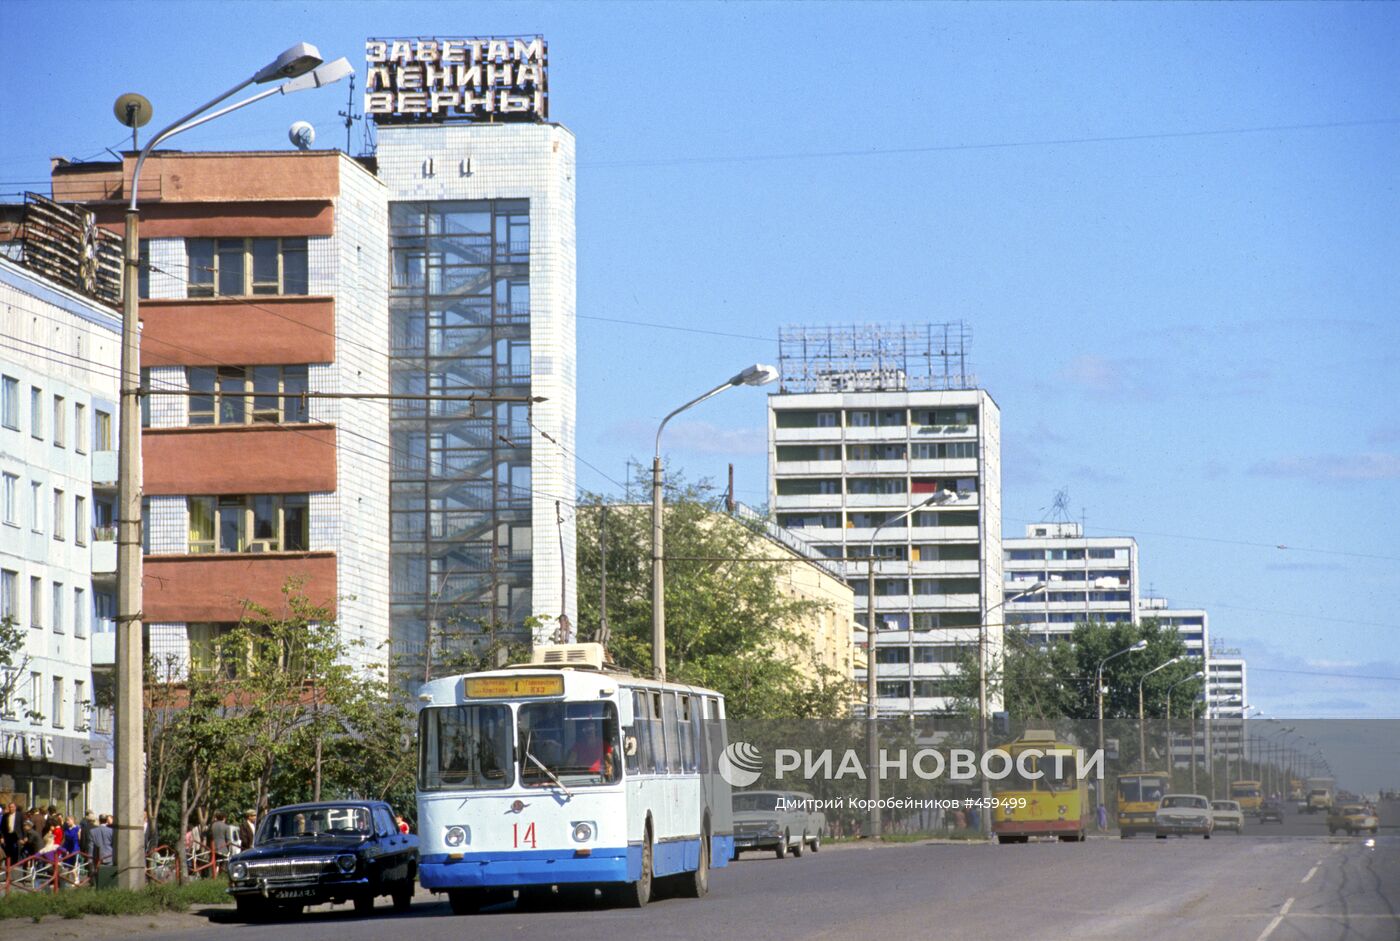 Улица города Кемерова